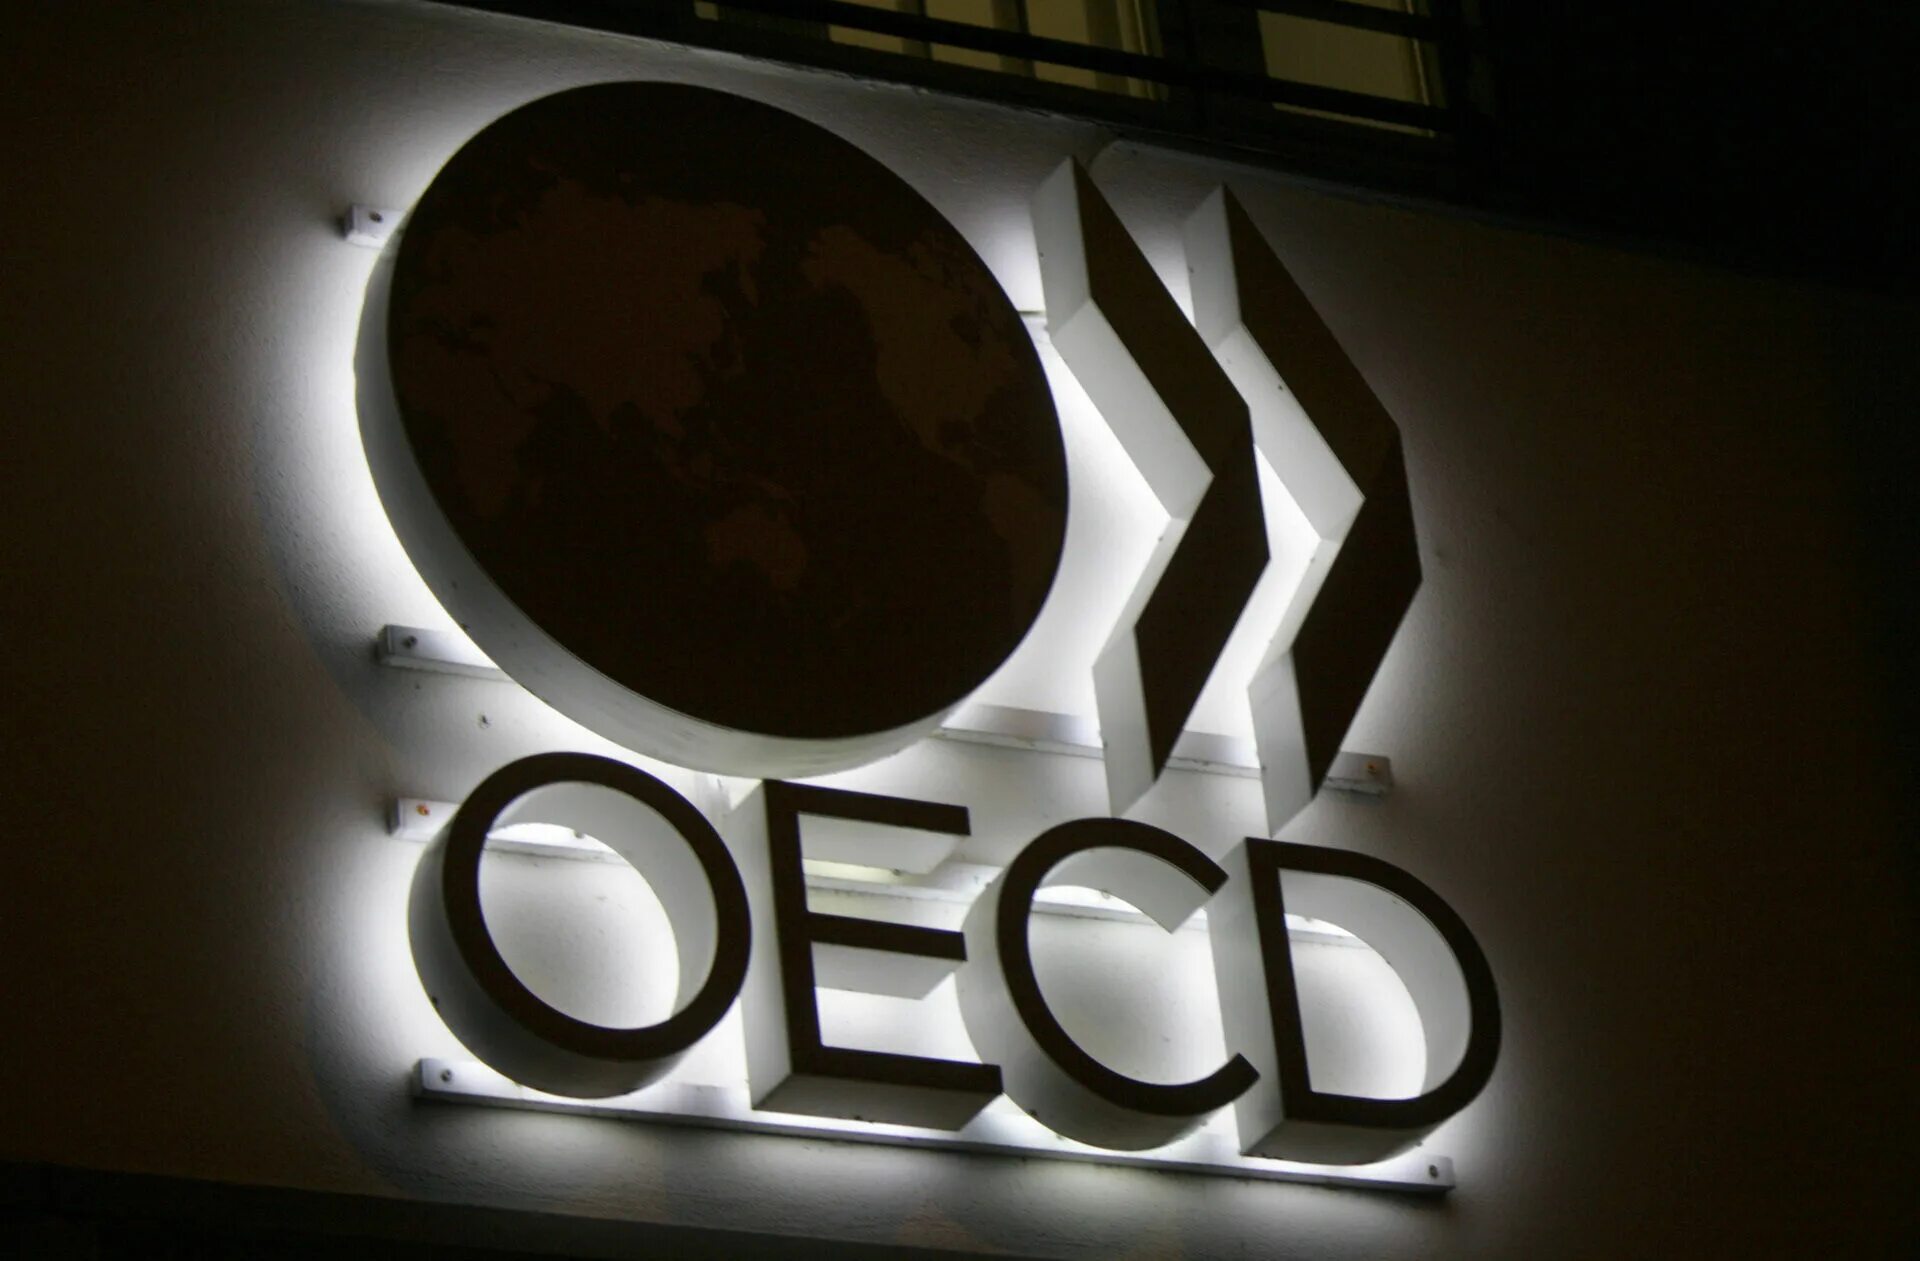 21 views. ОЭСР эмблема. Организация экономического сотрудничества и развития. Организация экономического сотрудничества и развития (ОЭСР). Лого OECD.